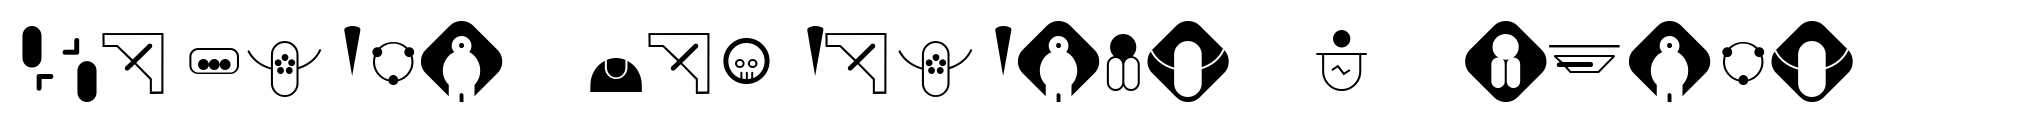 Navtilo Variations-Symbols image